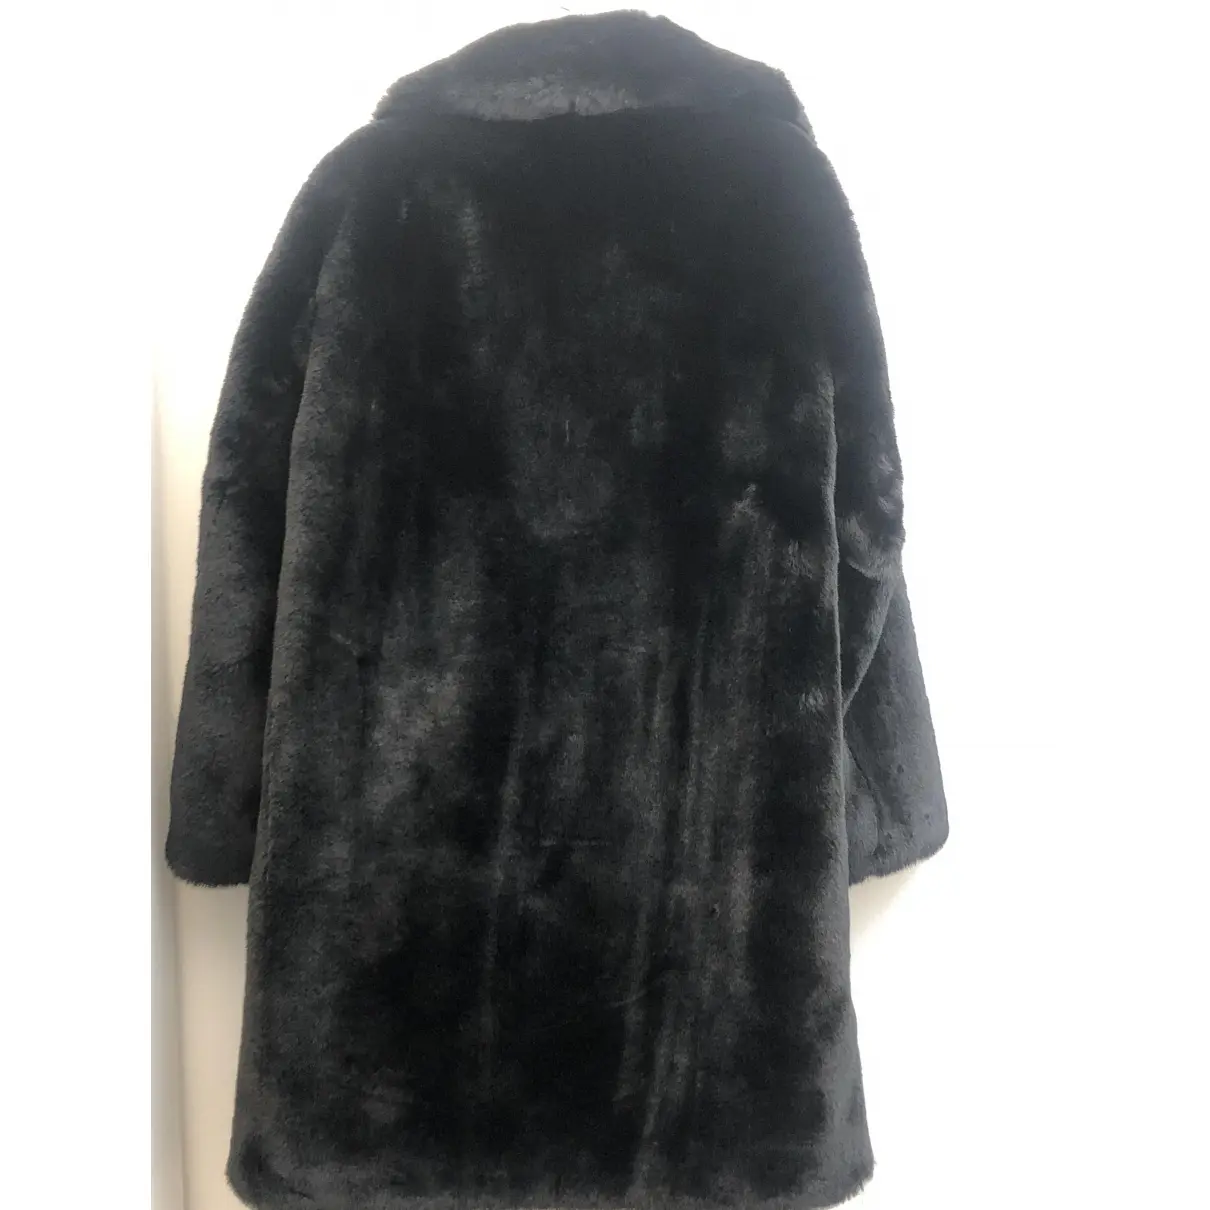 Buy The Kooples Fall Winter 2019 faux fur coat online